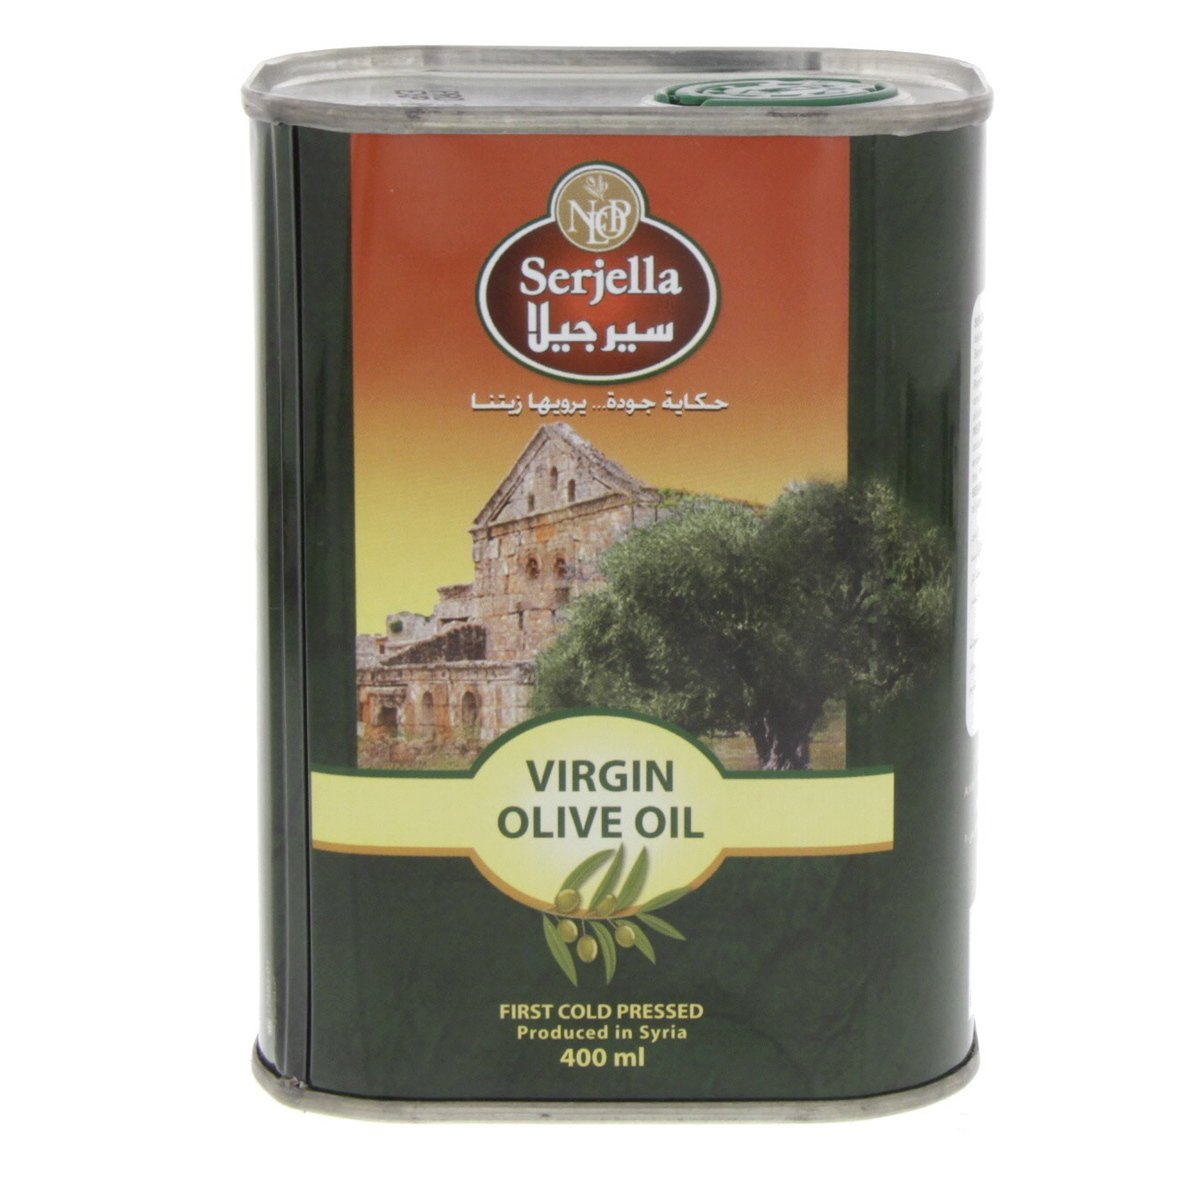 Serjella Virgin Olive Oil 400 ml